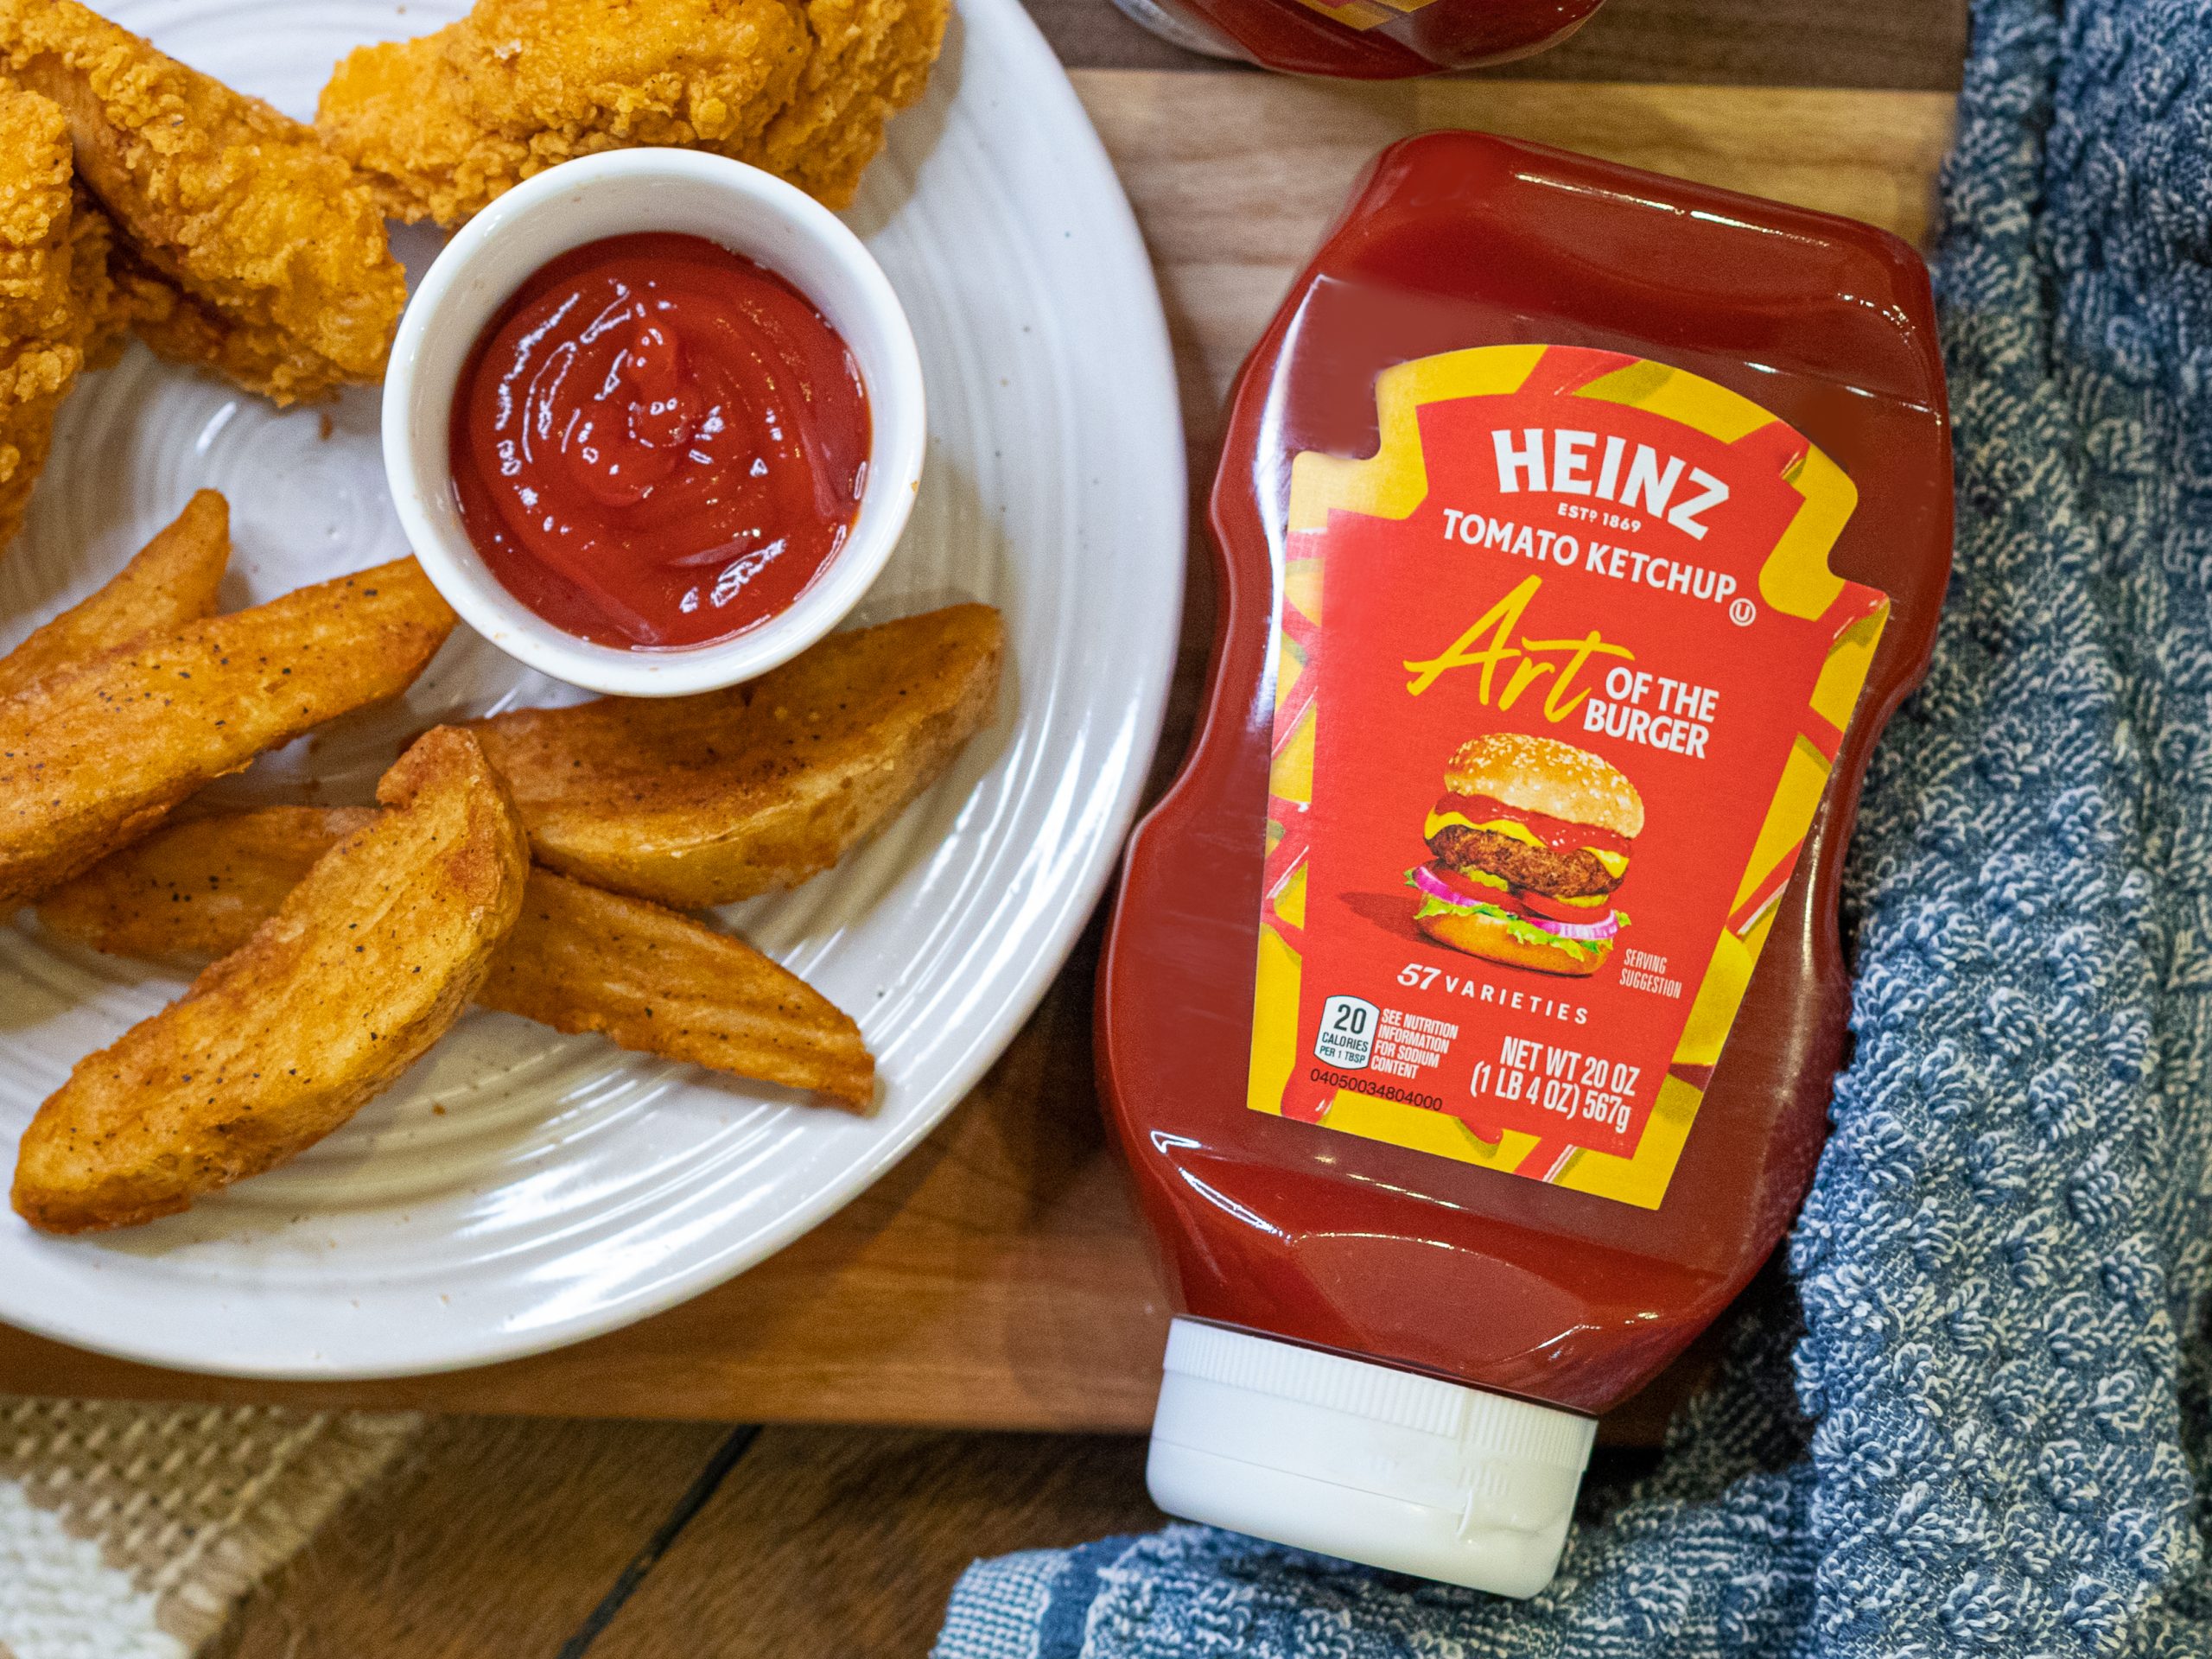 Get Heinz Ketchup For Just $1.79 At Kroger (Regular Price $4.29)